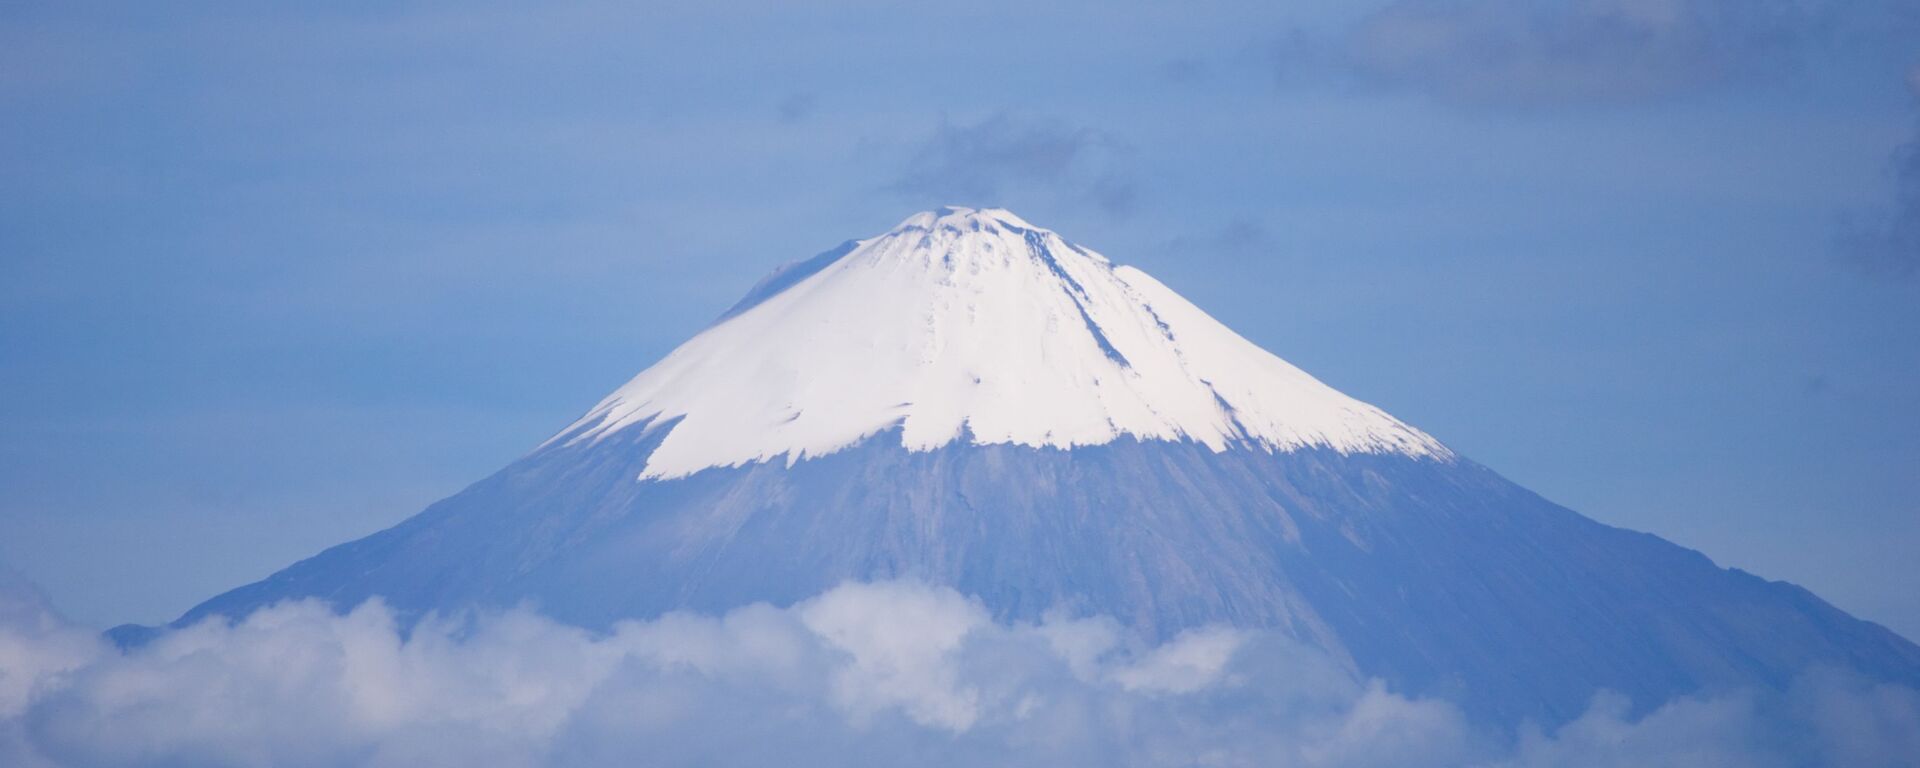 Volcán Sangay, Ecuador - Sputnik Mundo, 1920, 13.04.2021